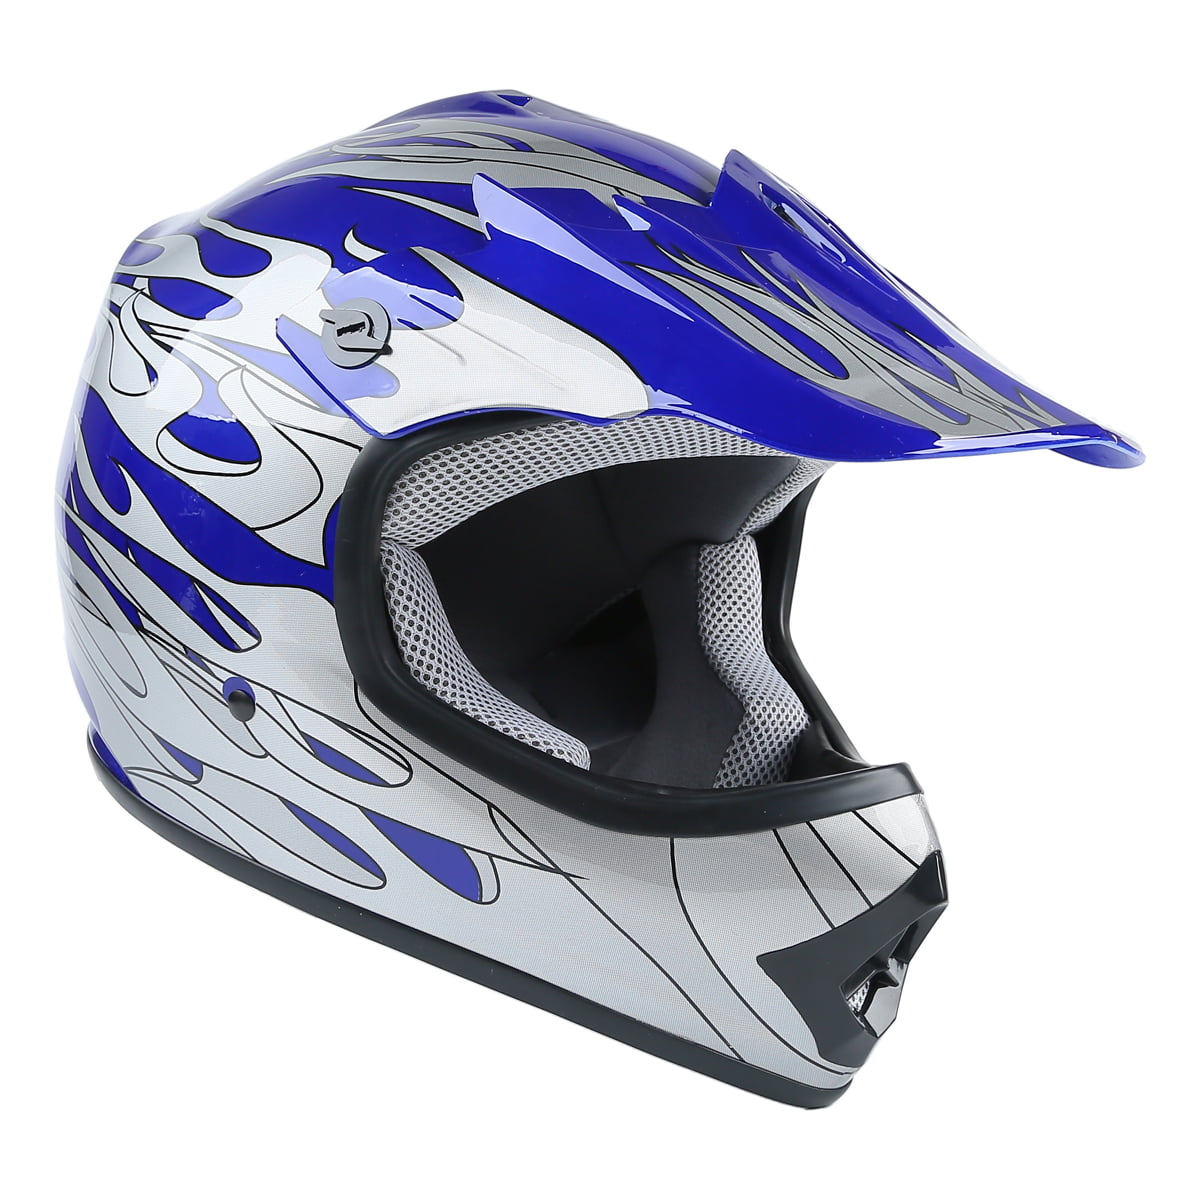 DOT Youth Blue Flame Dirt Bike ATV MX Motocross Helmet Goggles+Gloves S/M/L/XL 